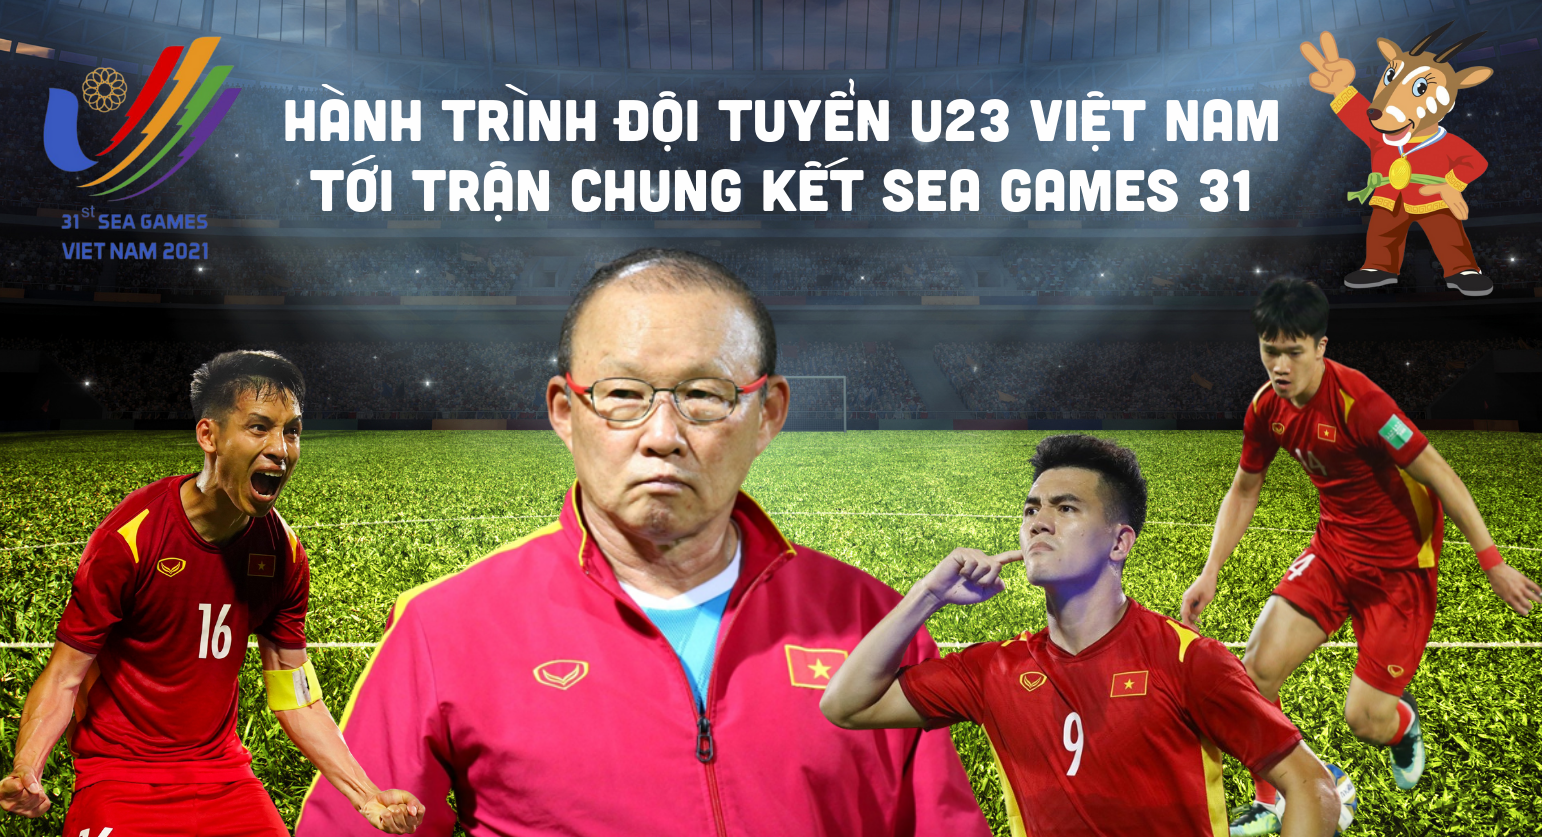 [Infographics]: Hành trình đội tuyển U23 Việt Nam tới trận chung kết SEA Games 31